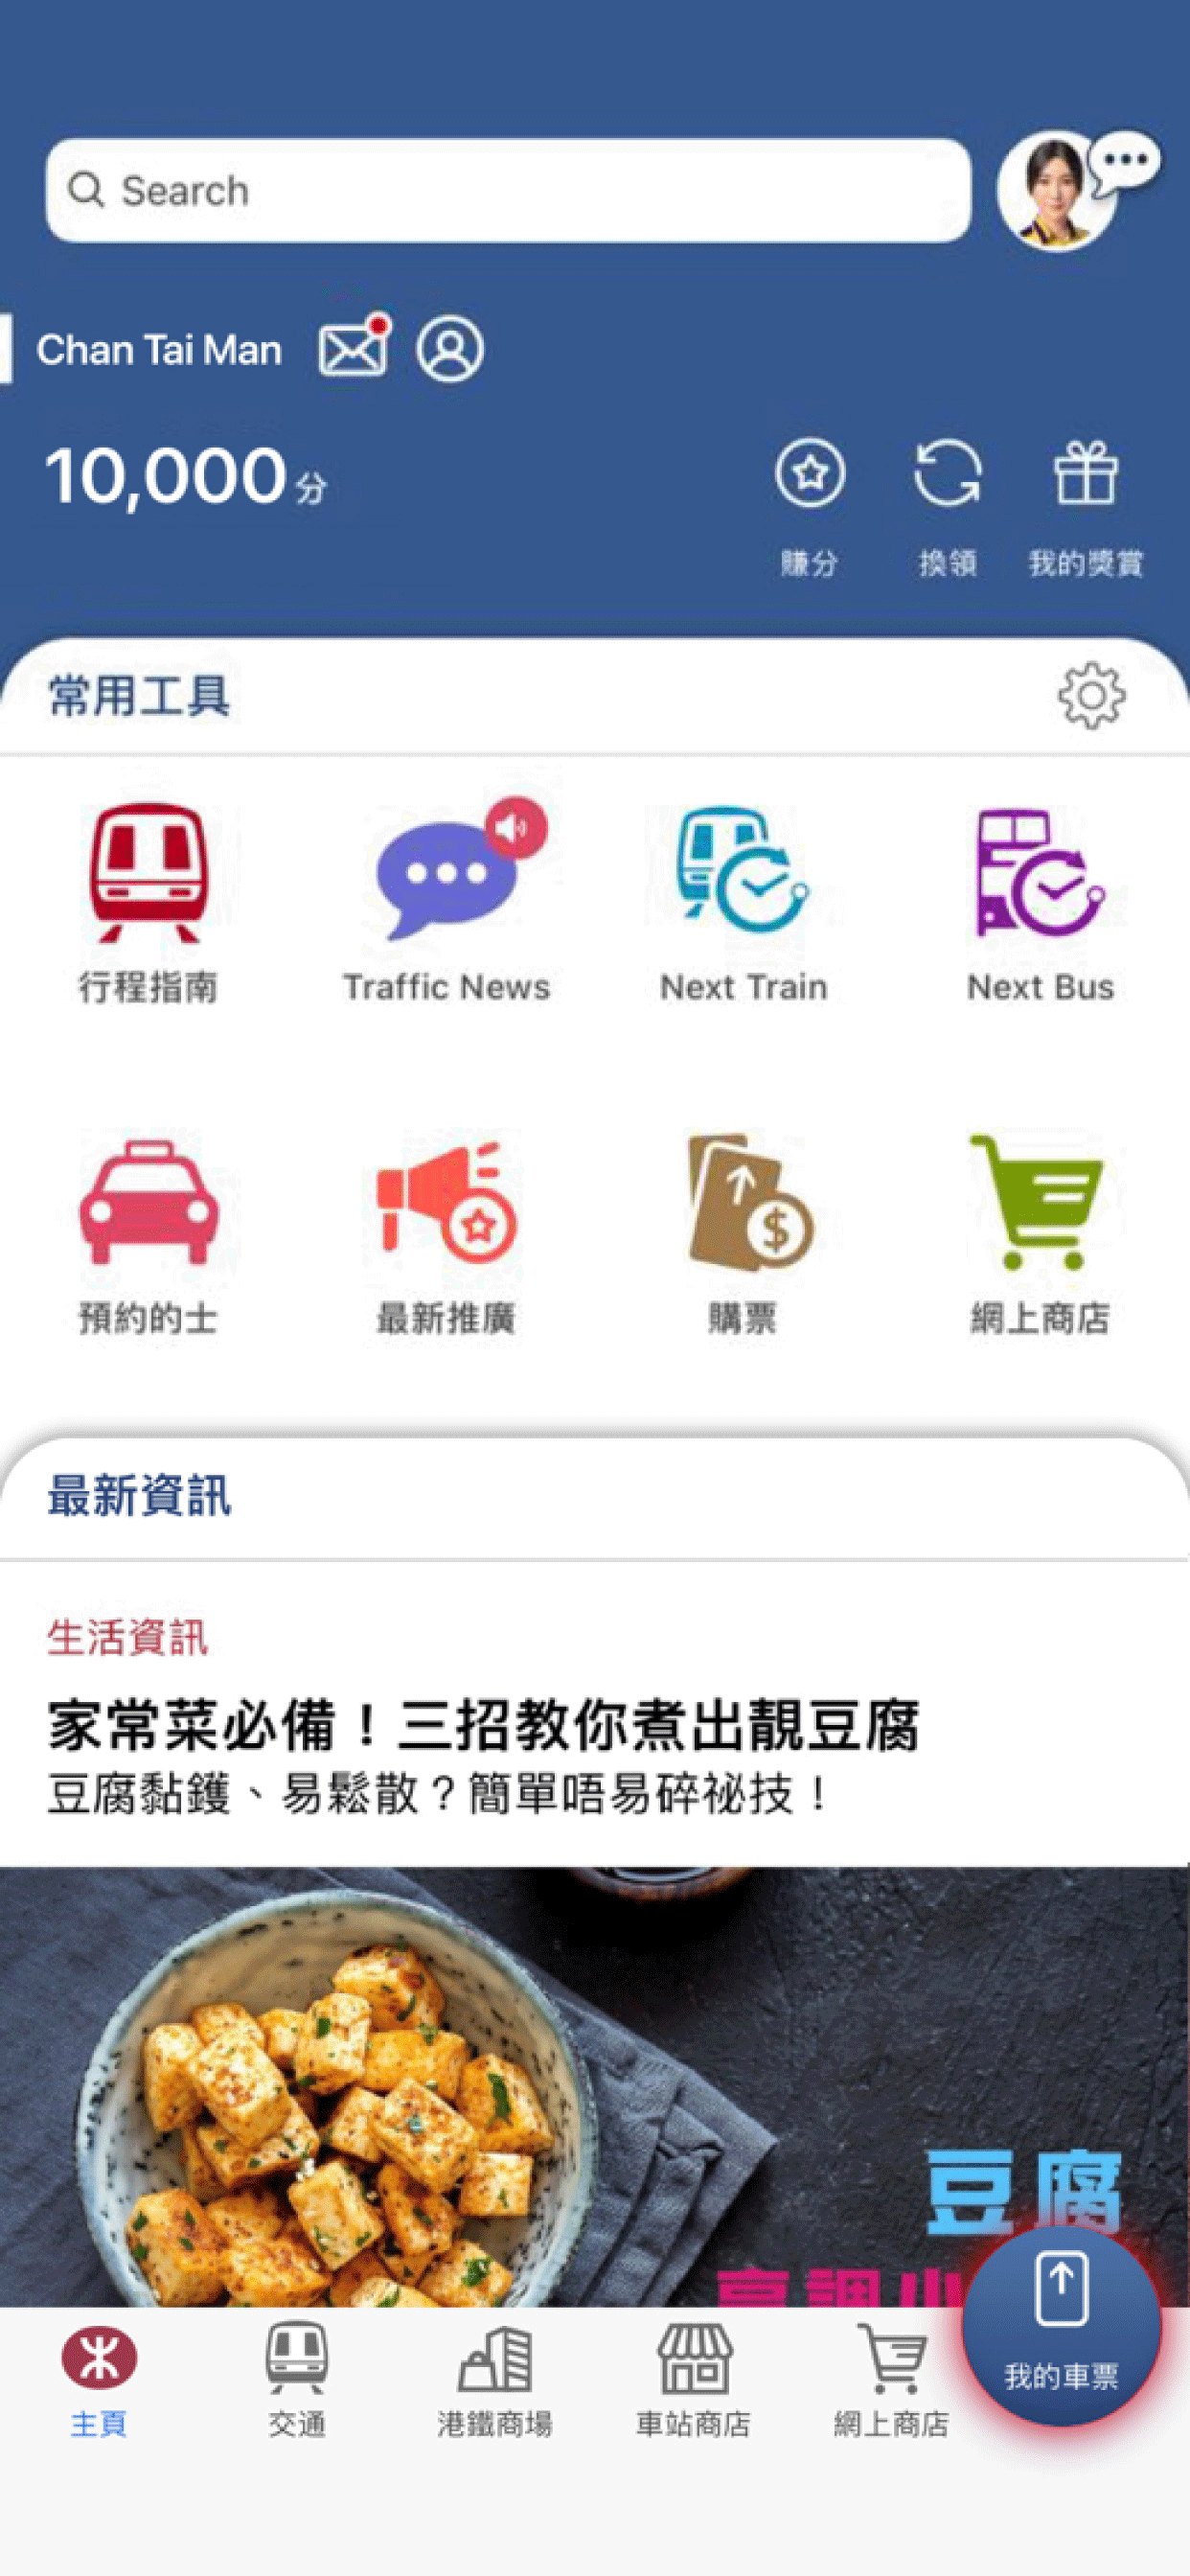 過閘前，預先登入 MTR Mobile 並於首頁選擇「我的車票」，從列表中選取適用之車票二維碼